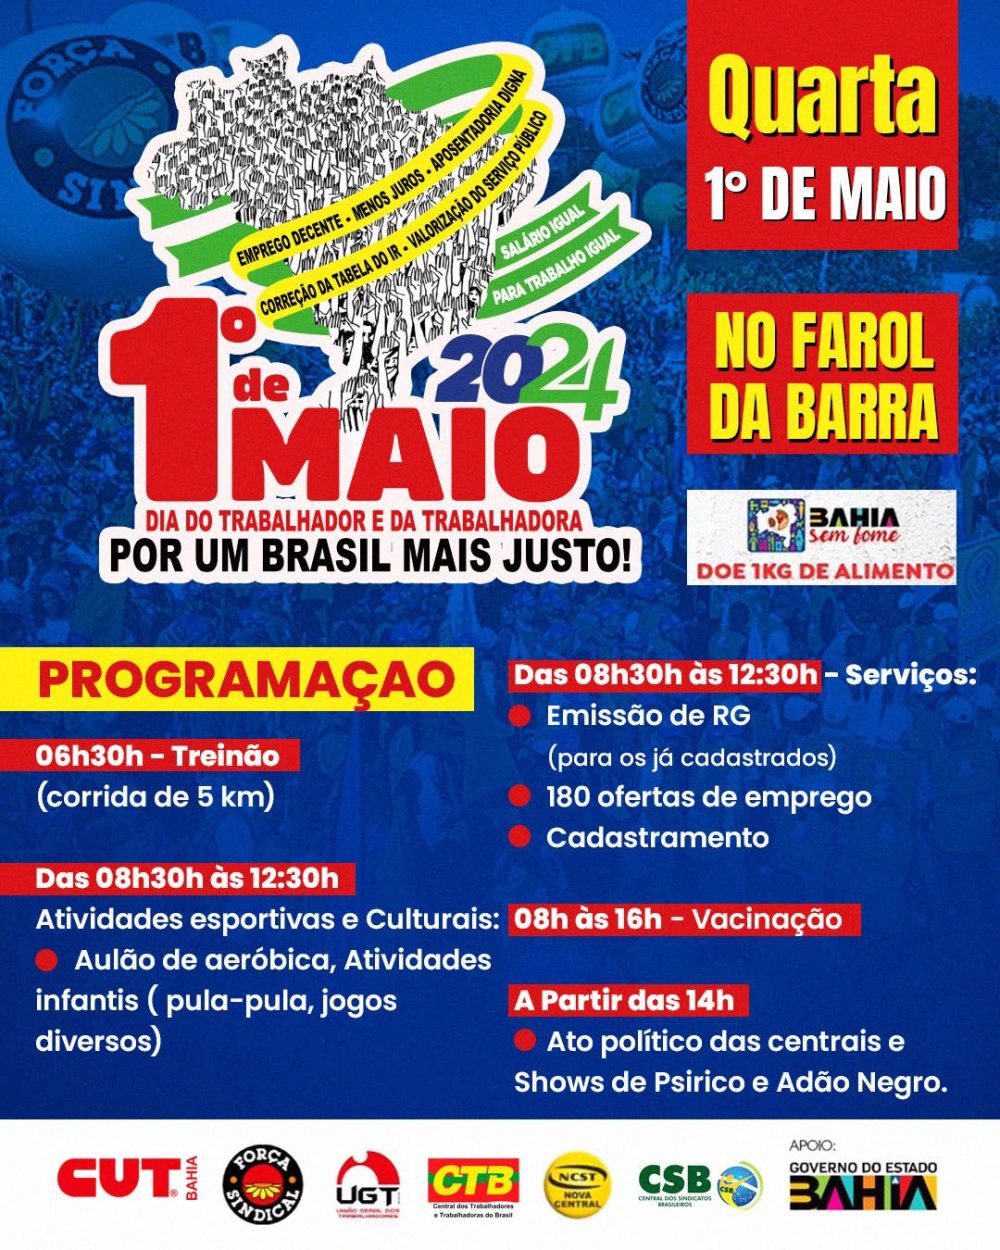 1º de Maio no Farol da Barra: ato e show de Adão Negro e Psirico